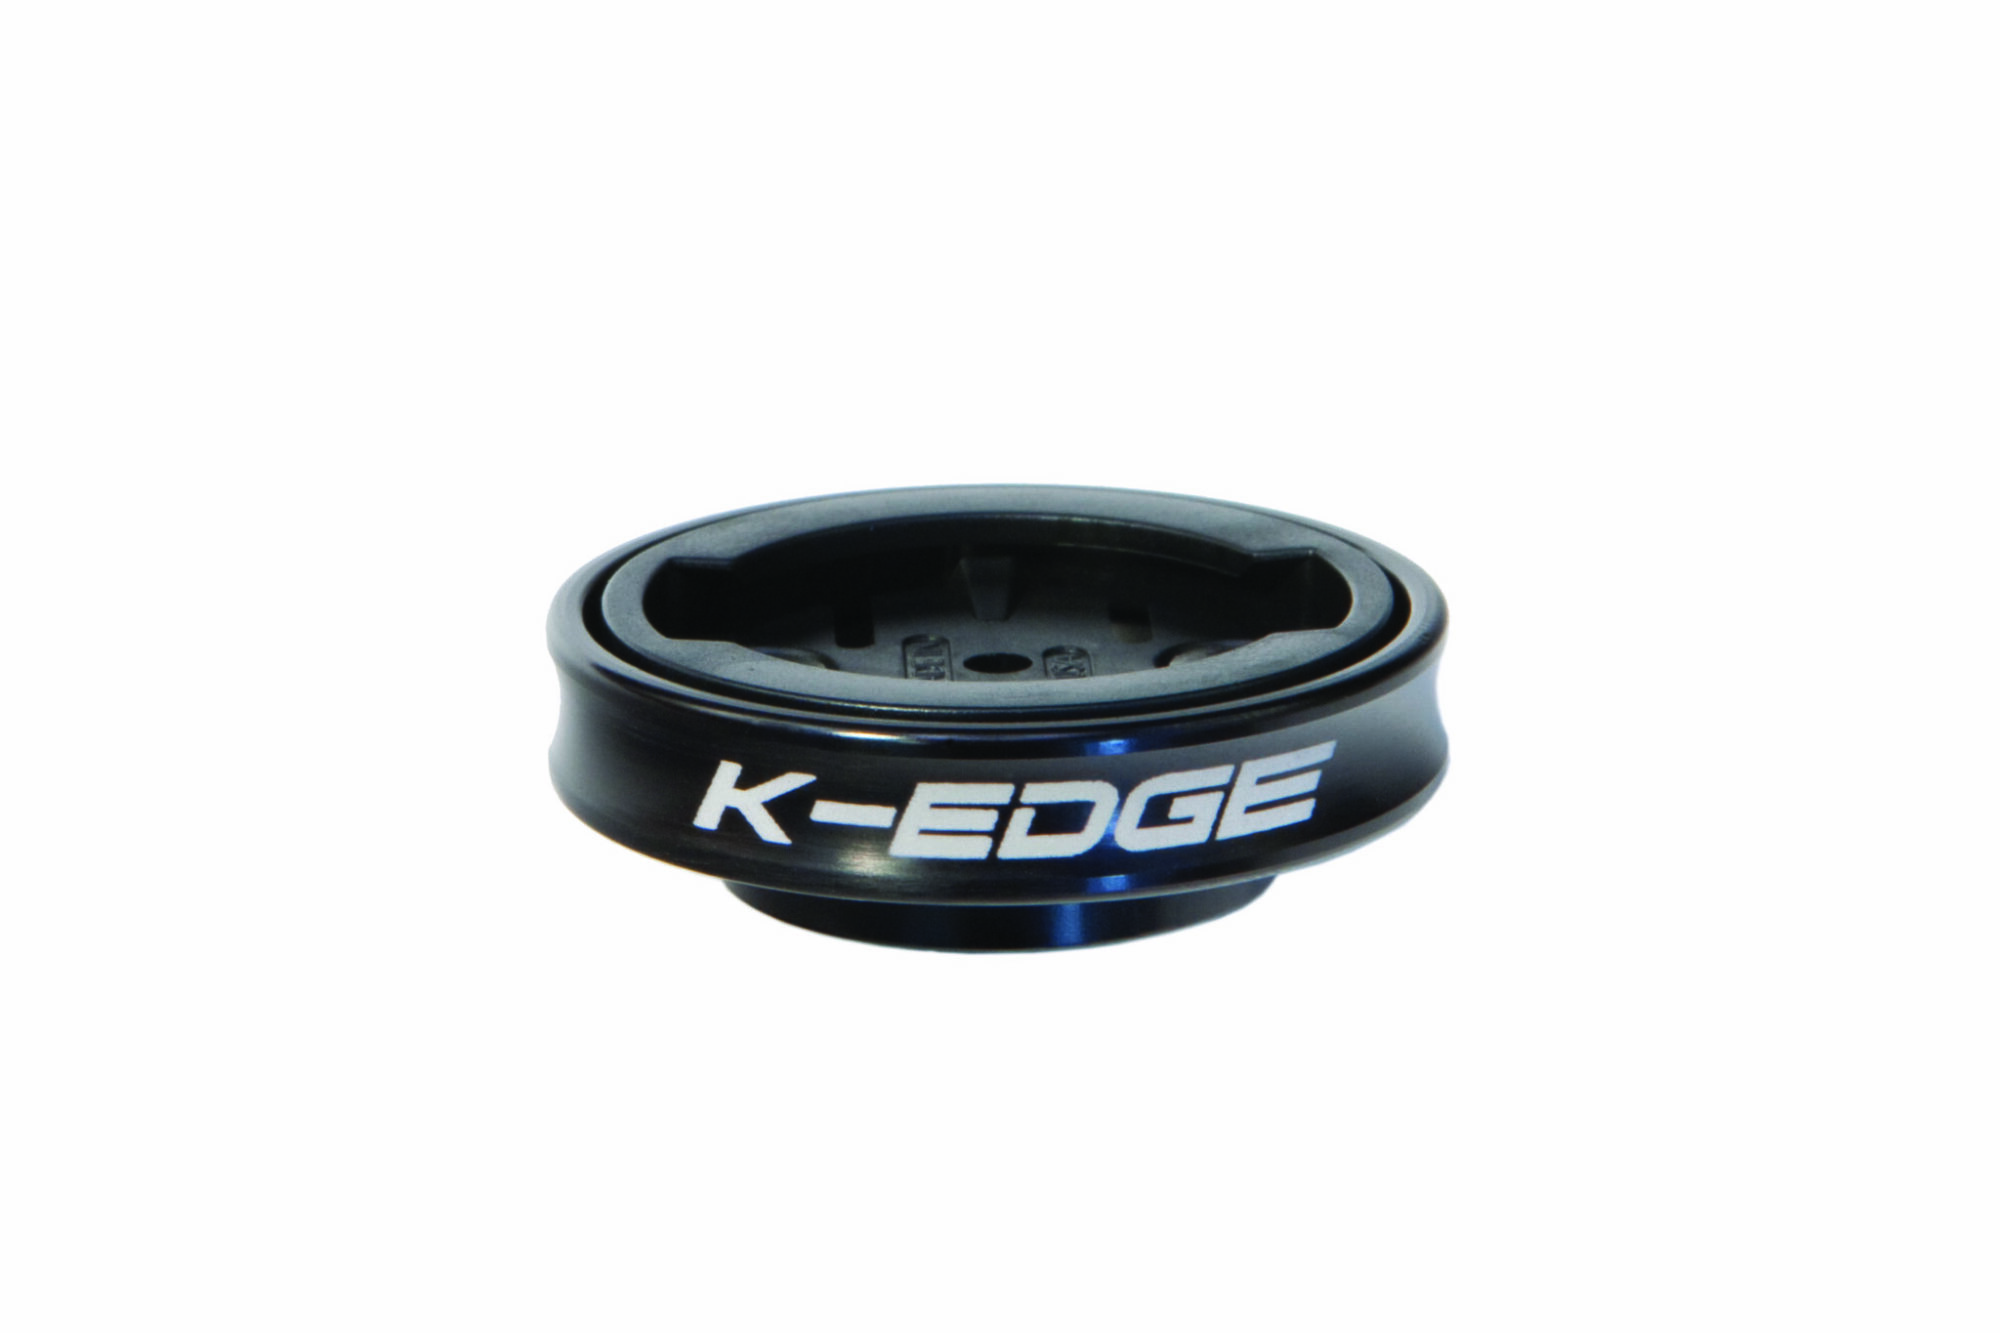 K-Edge Gravity Stem Cap Mount Garmin Edge & Forerunner Black LIFETIME WARRANTY! 